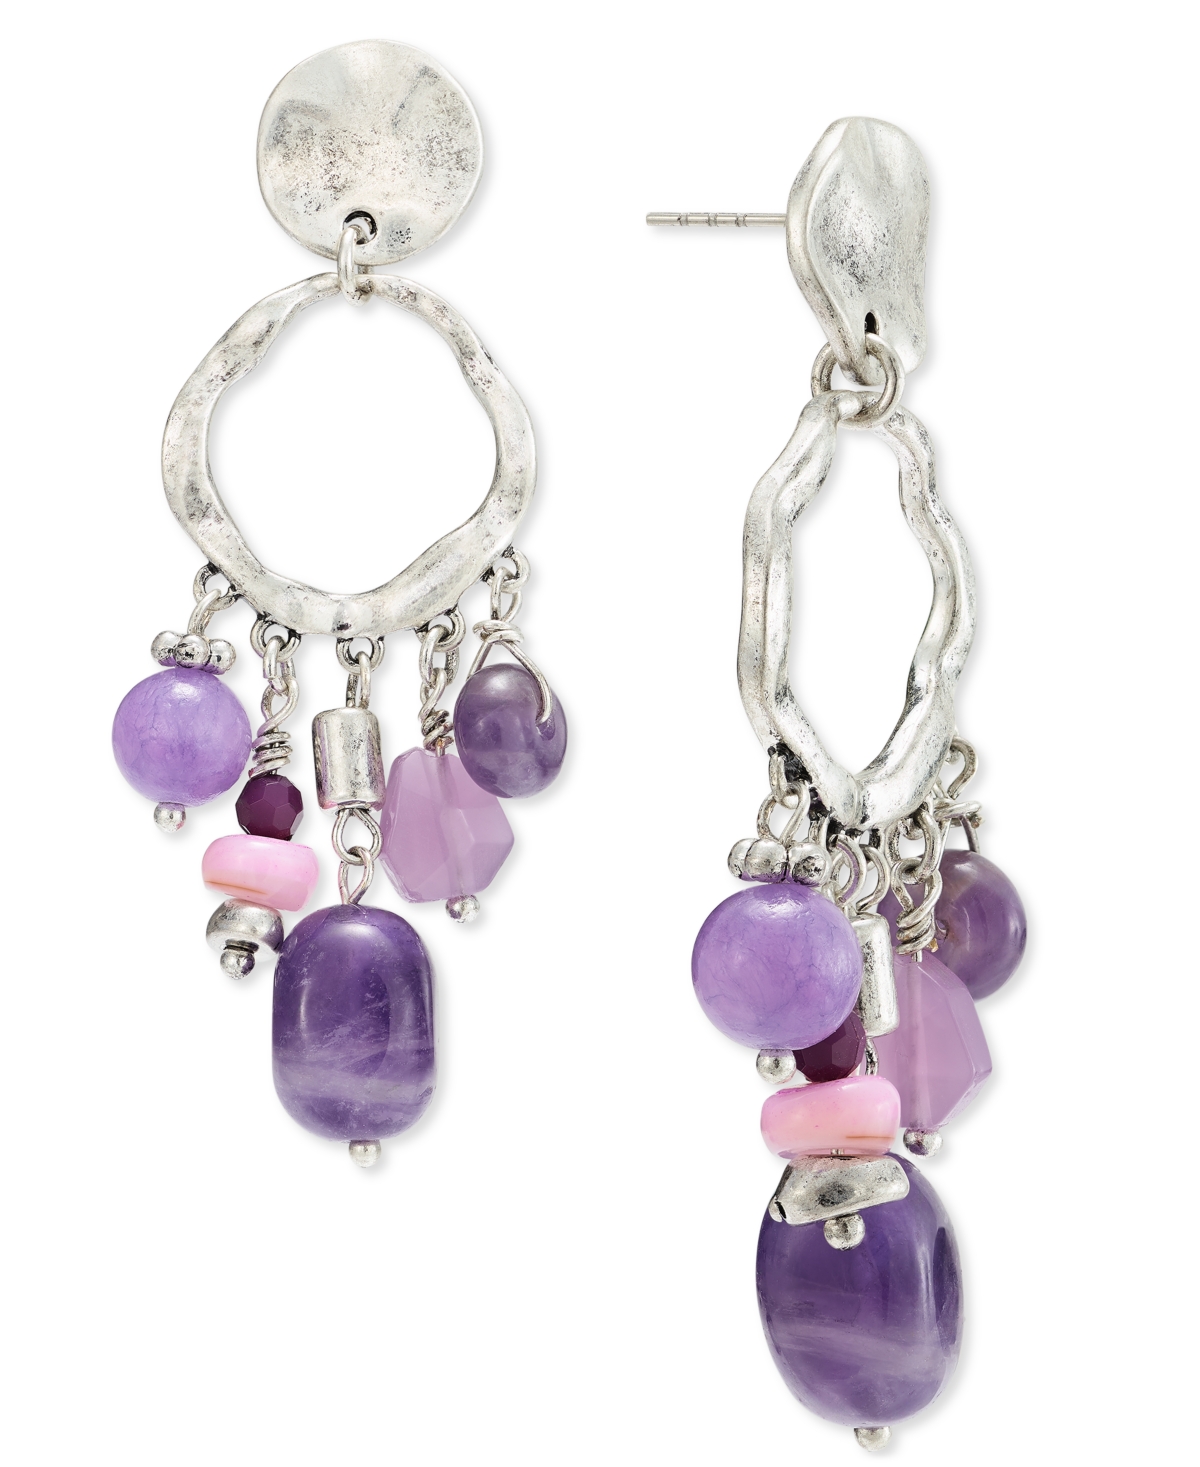 Bead Fringe Drop Earrings, Created for Macy's - Purple